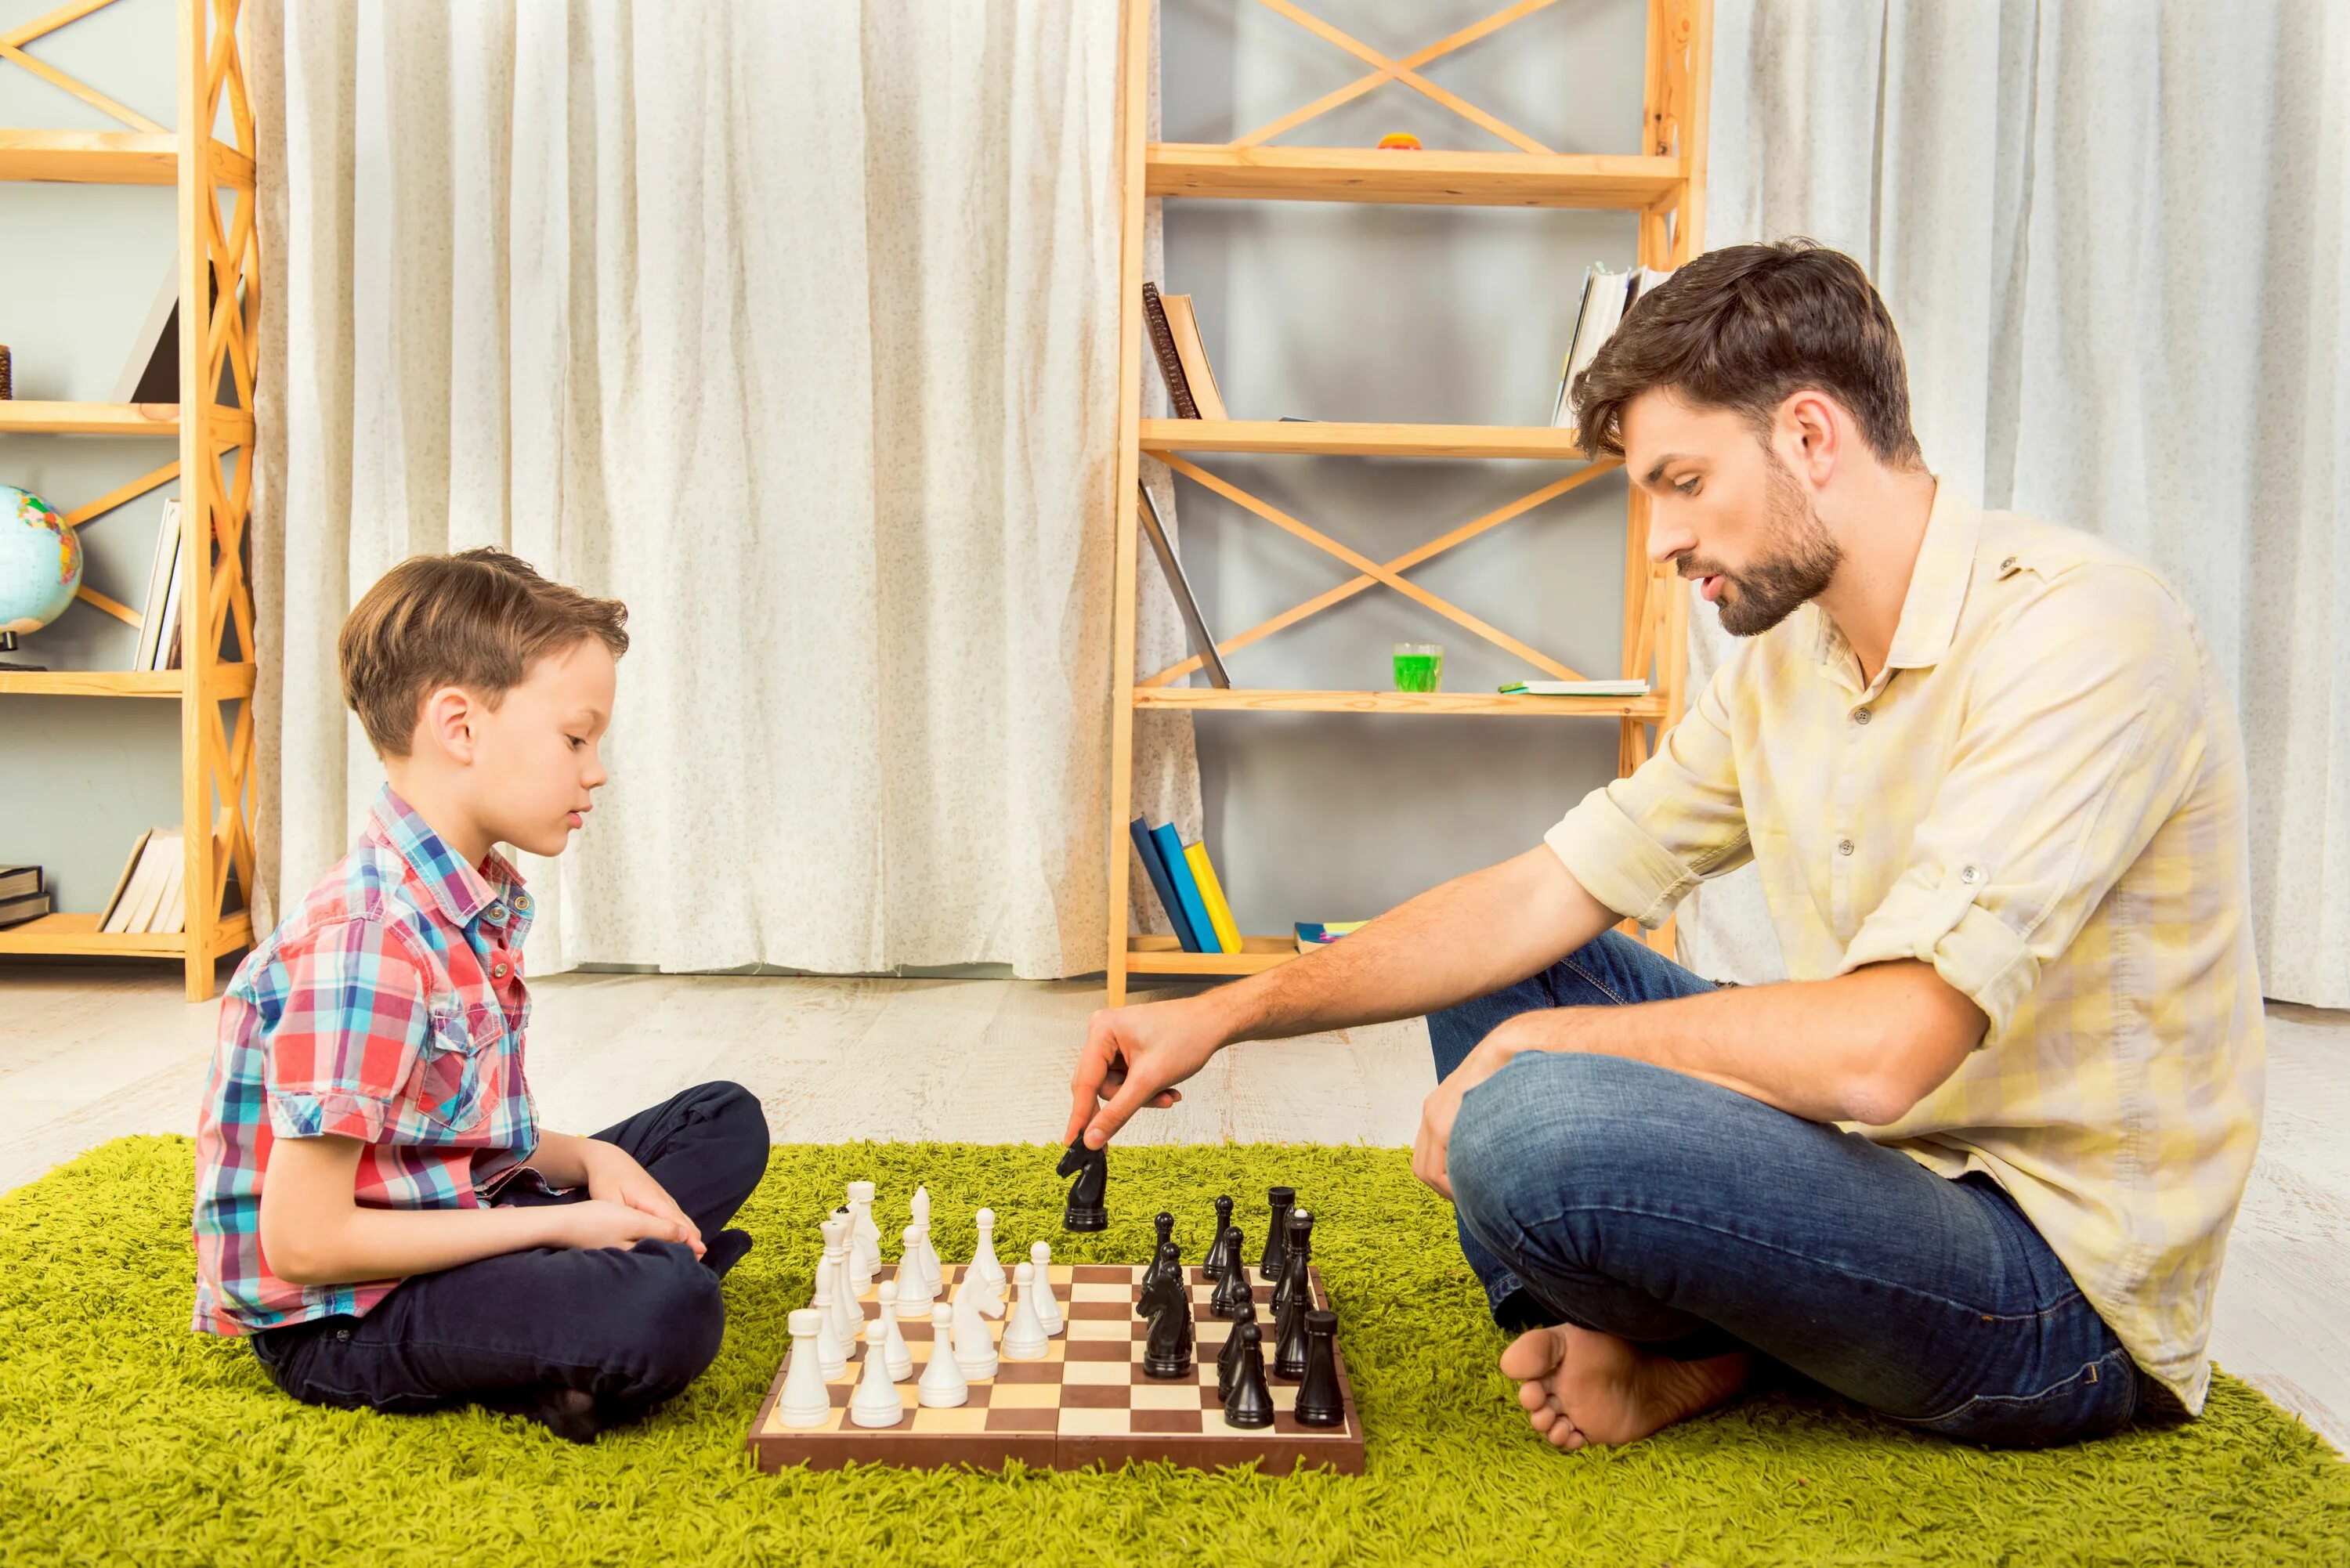 Папа играет в шахматы. Папа с сыном играют в шахматы. Играющие в шахматы сын и отец. Папа с сыном играют в шахматы фото. Научи папу играть